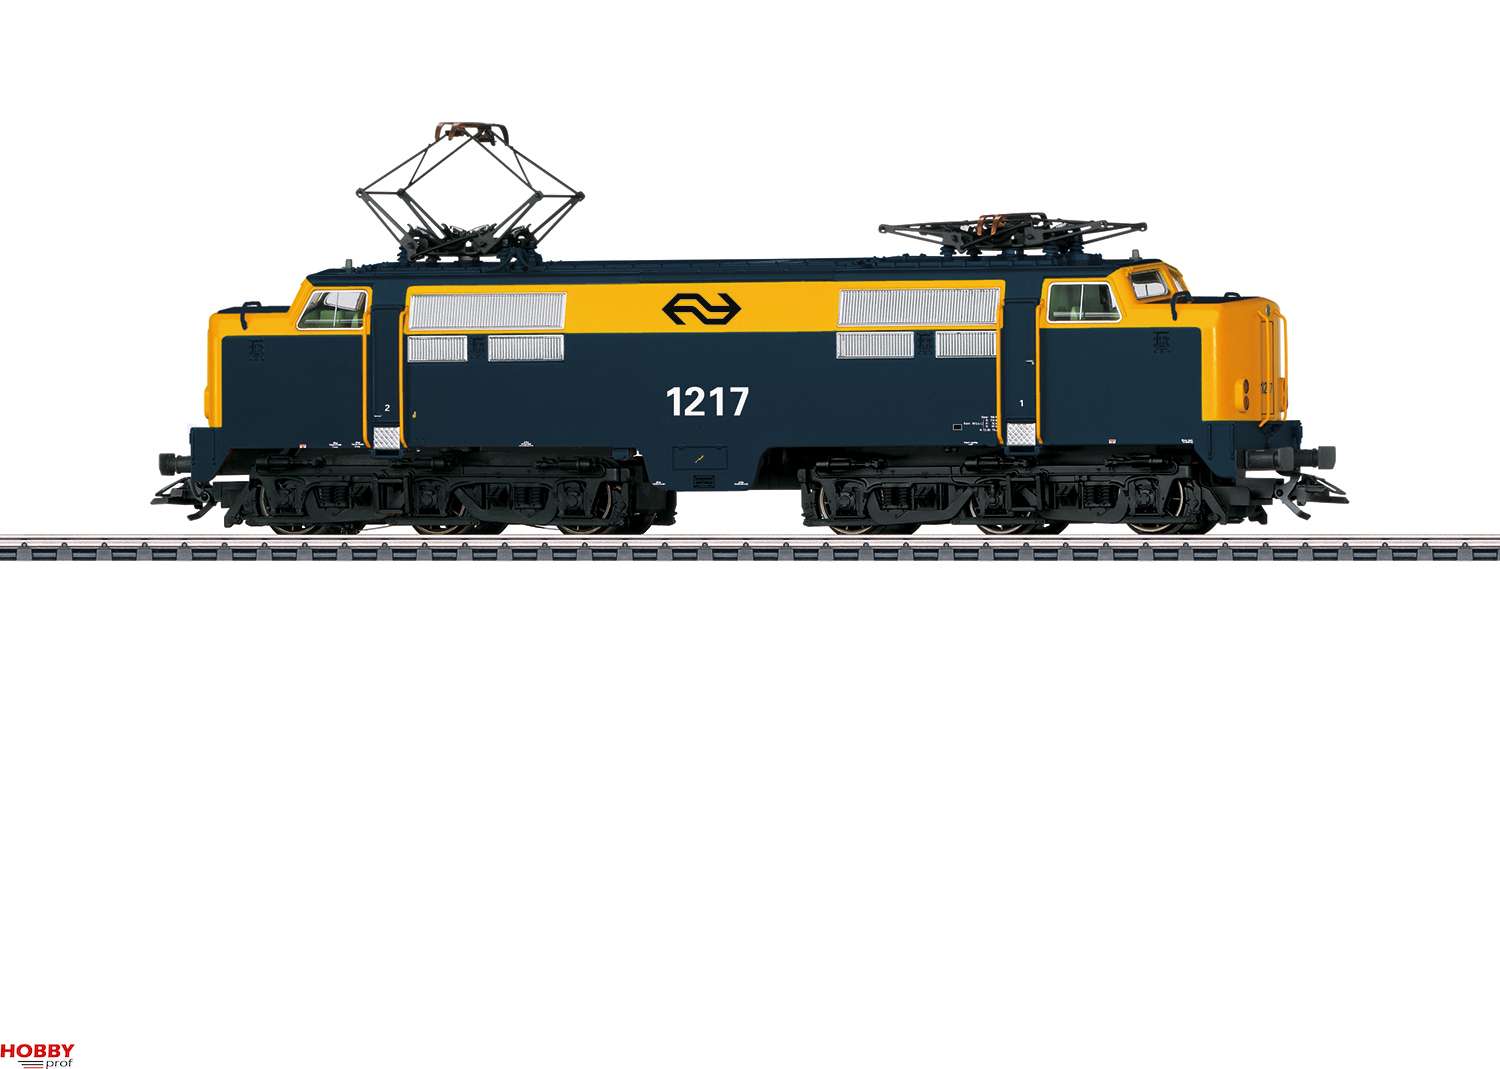 convergentie dienen enthousiast Märklin NS Serie-1200 Electric Locomotive Schaal 1:87 (H0) - Hobbyprof